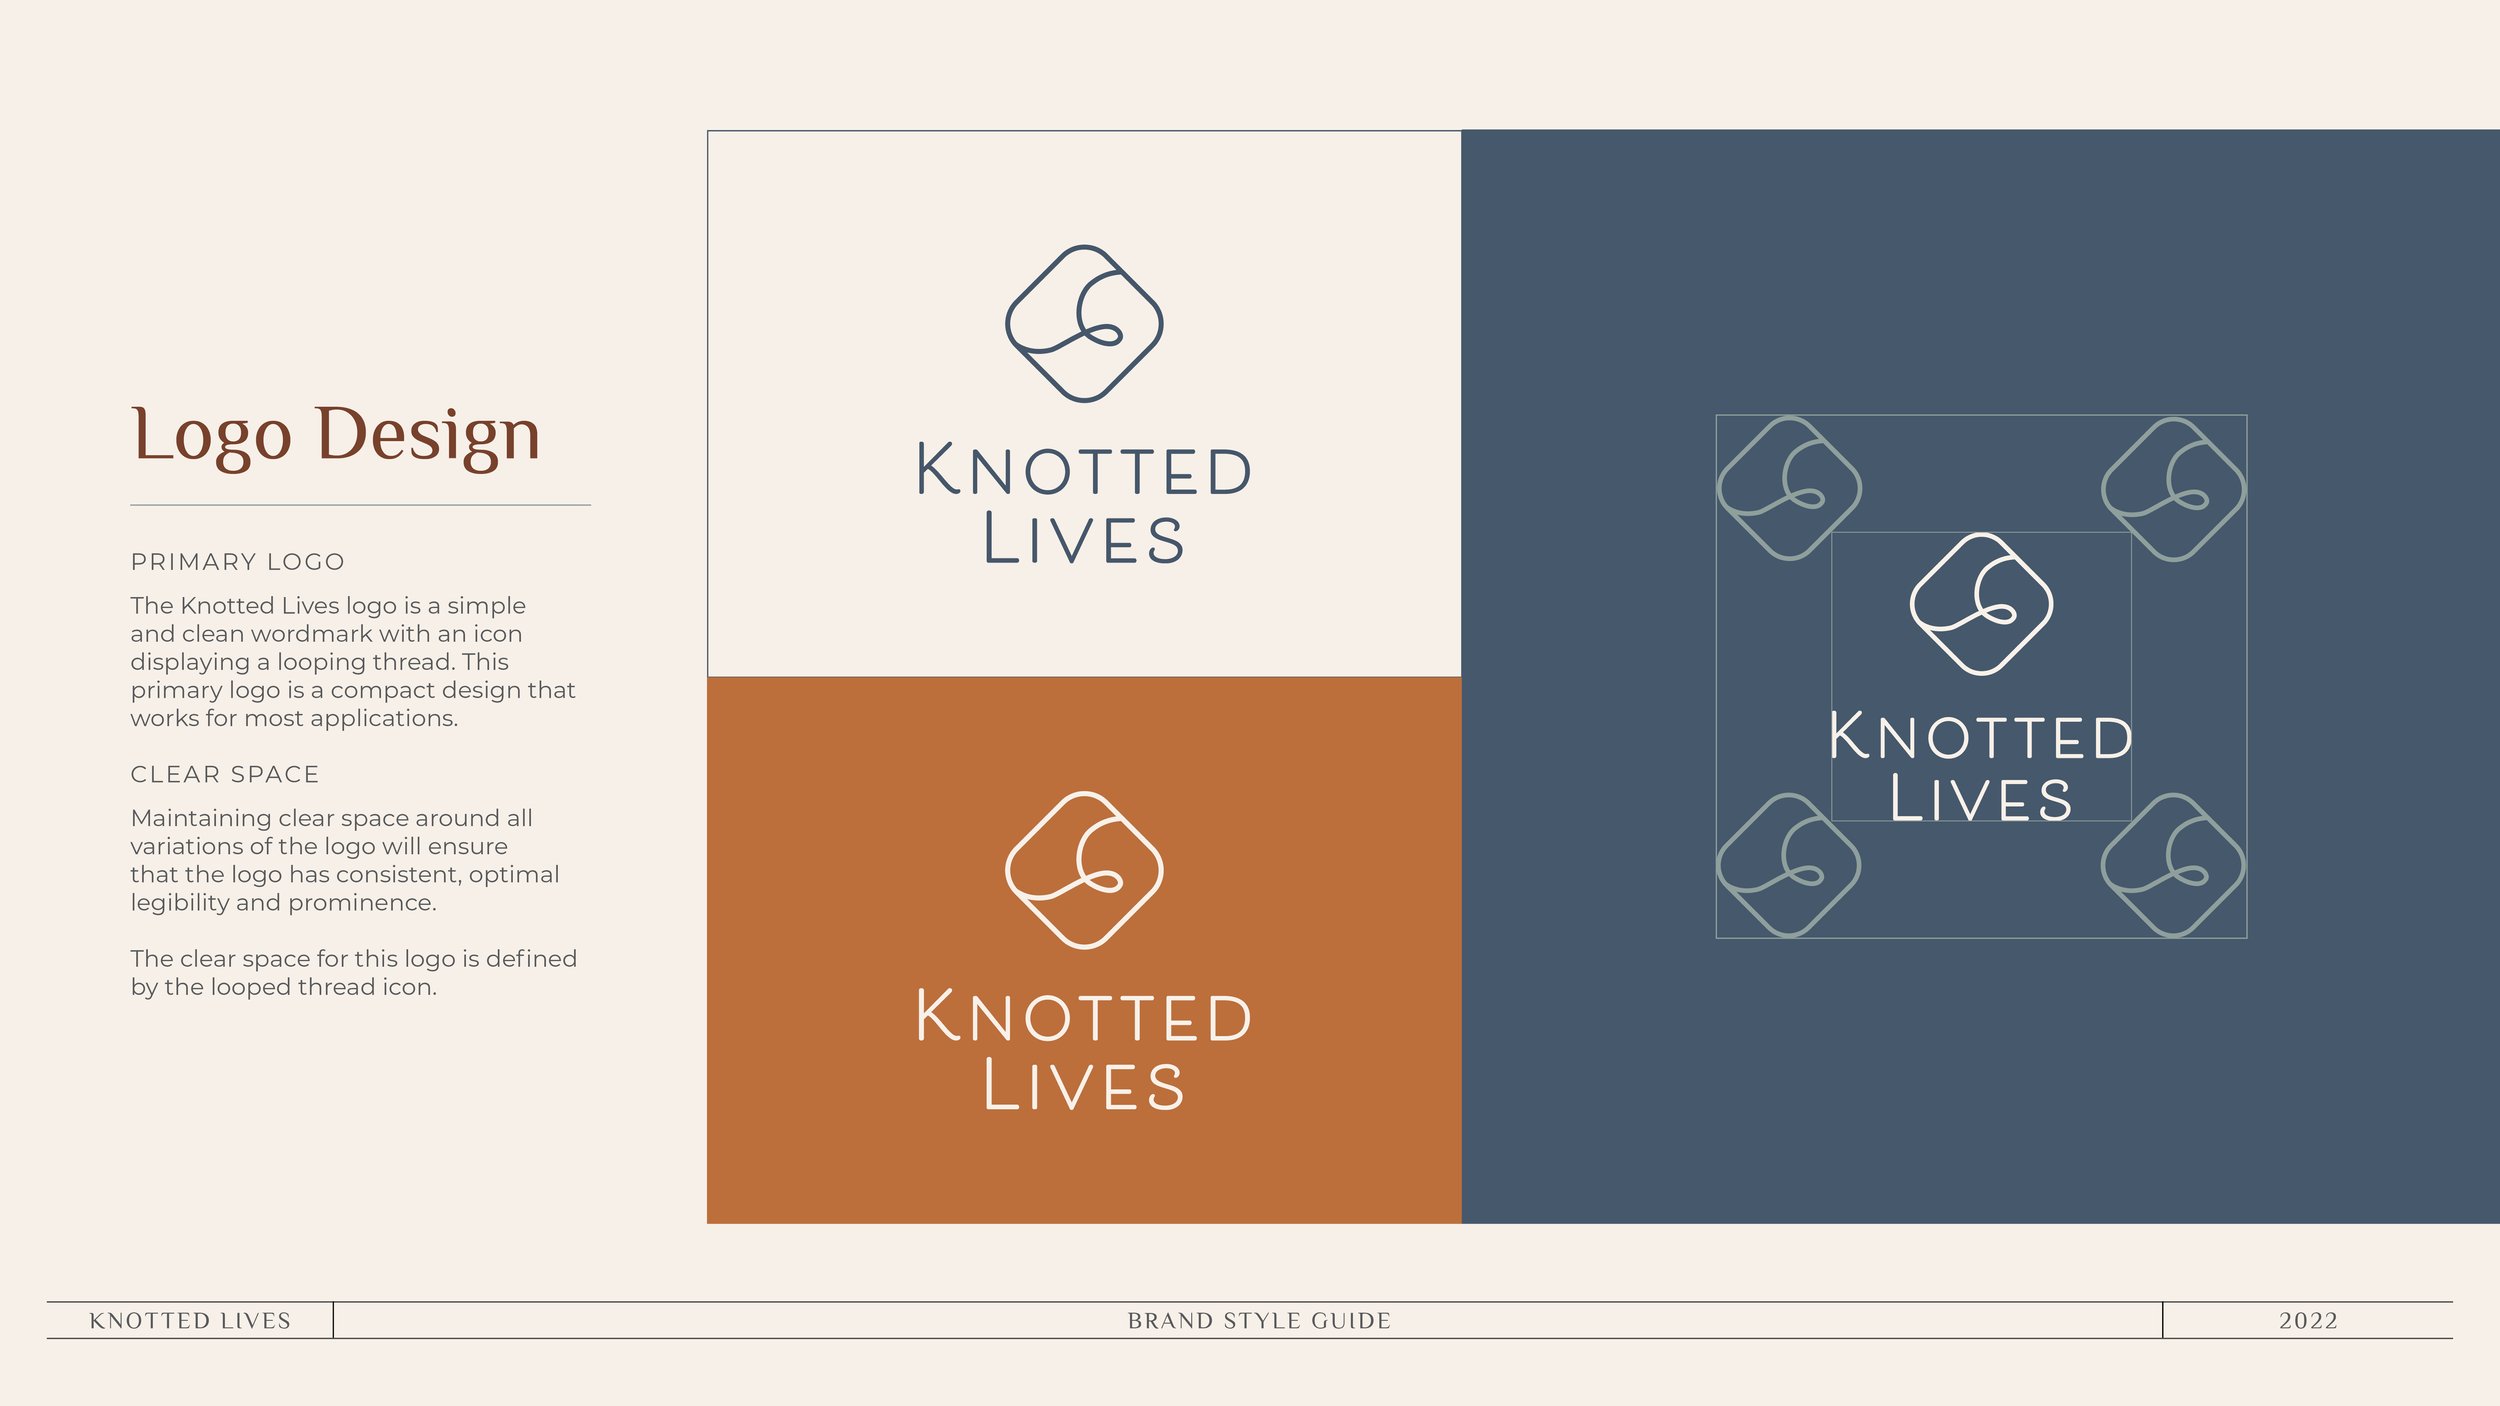 KnottedLives_BrandStyleGuide_20224.jpg